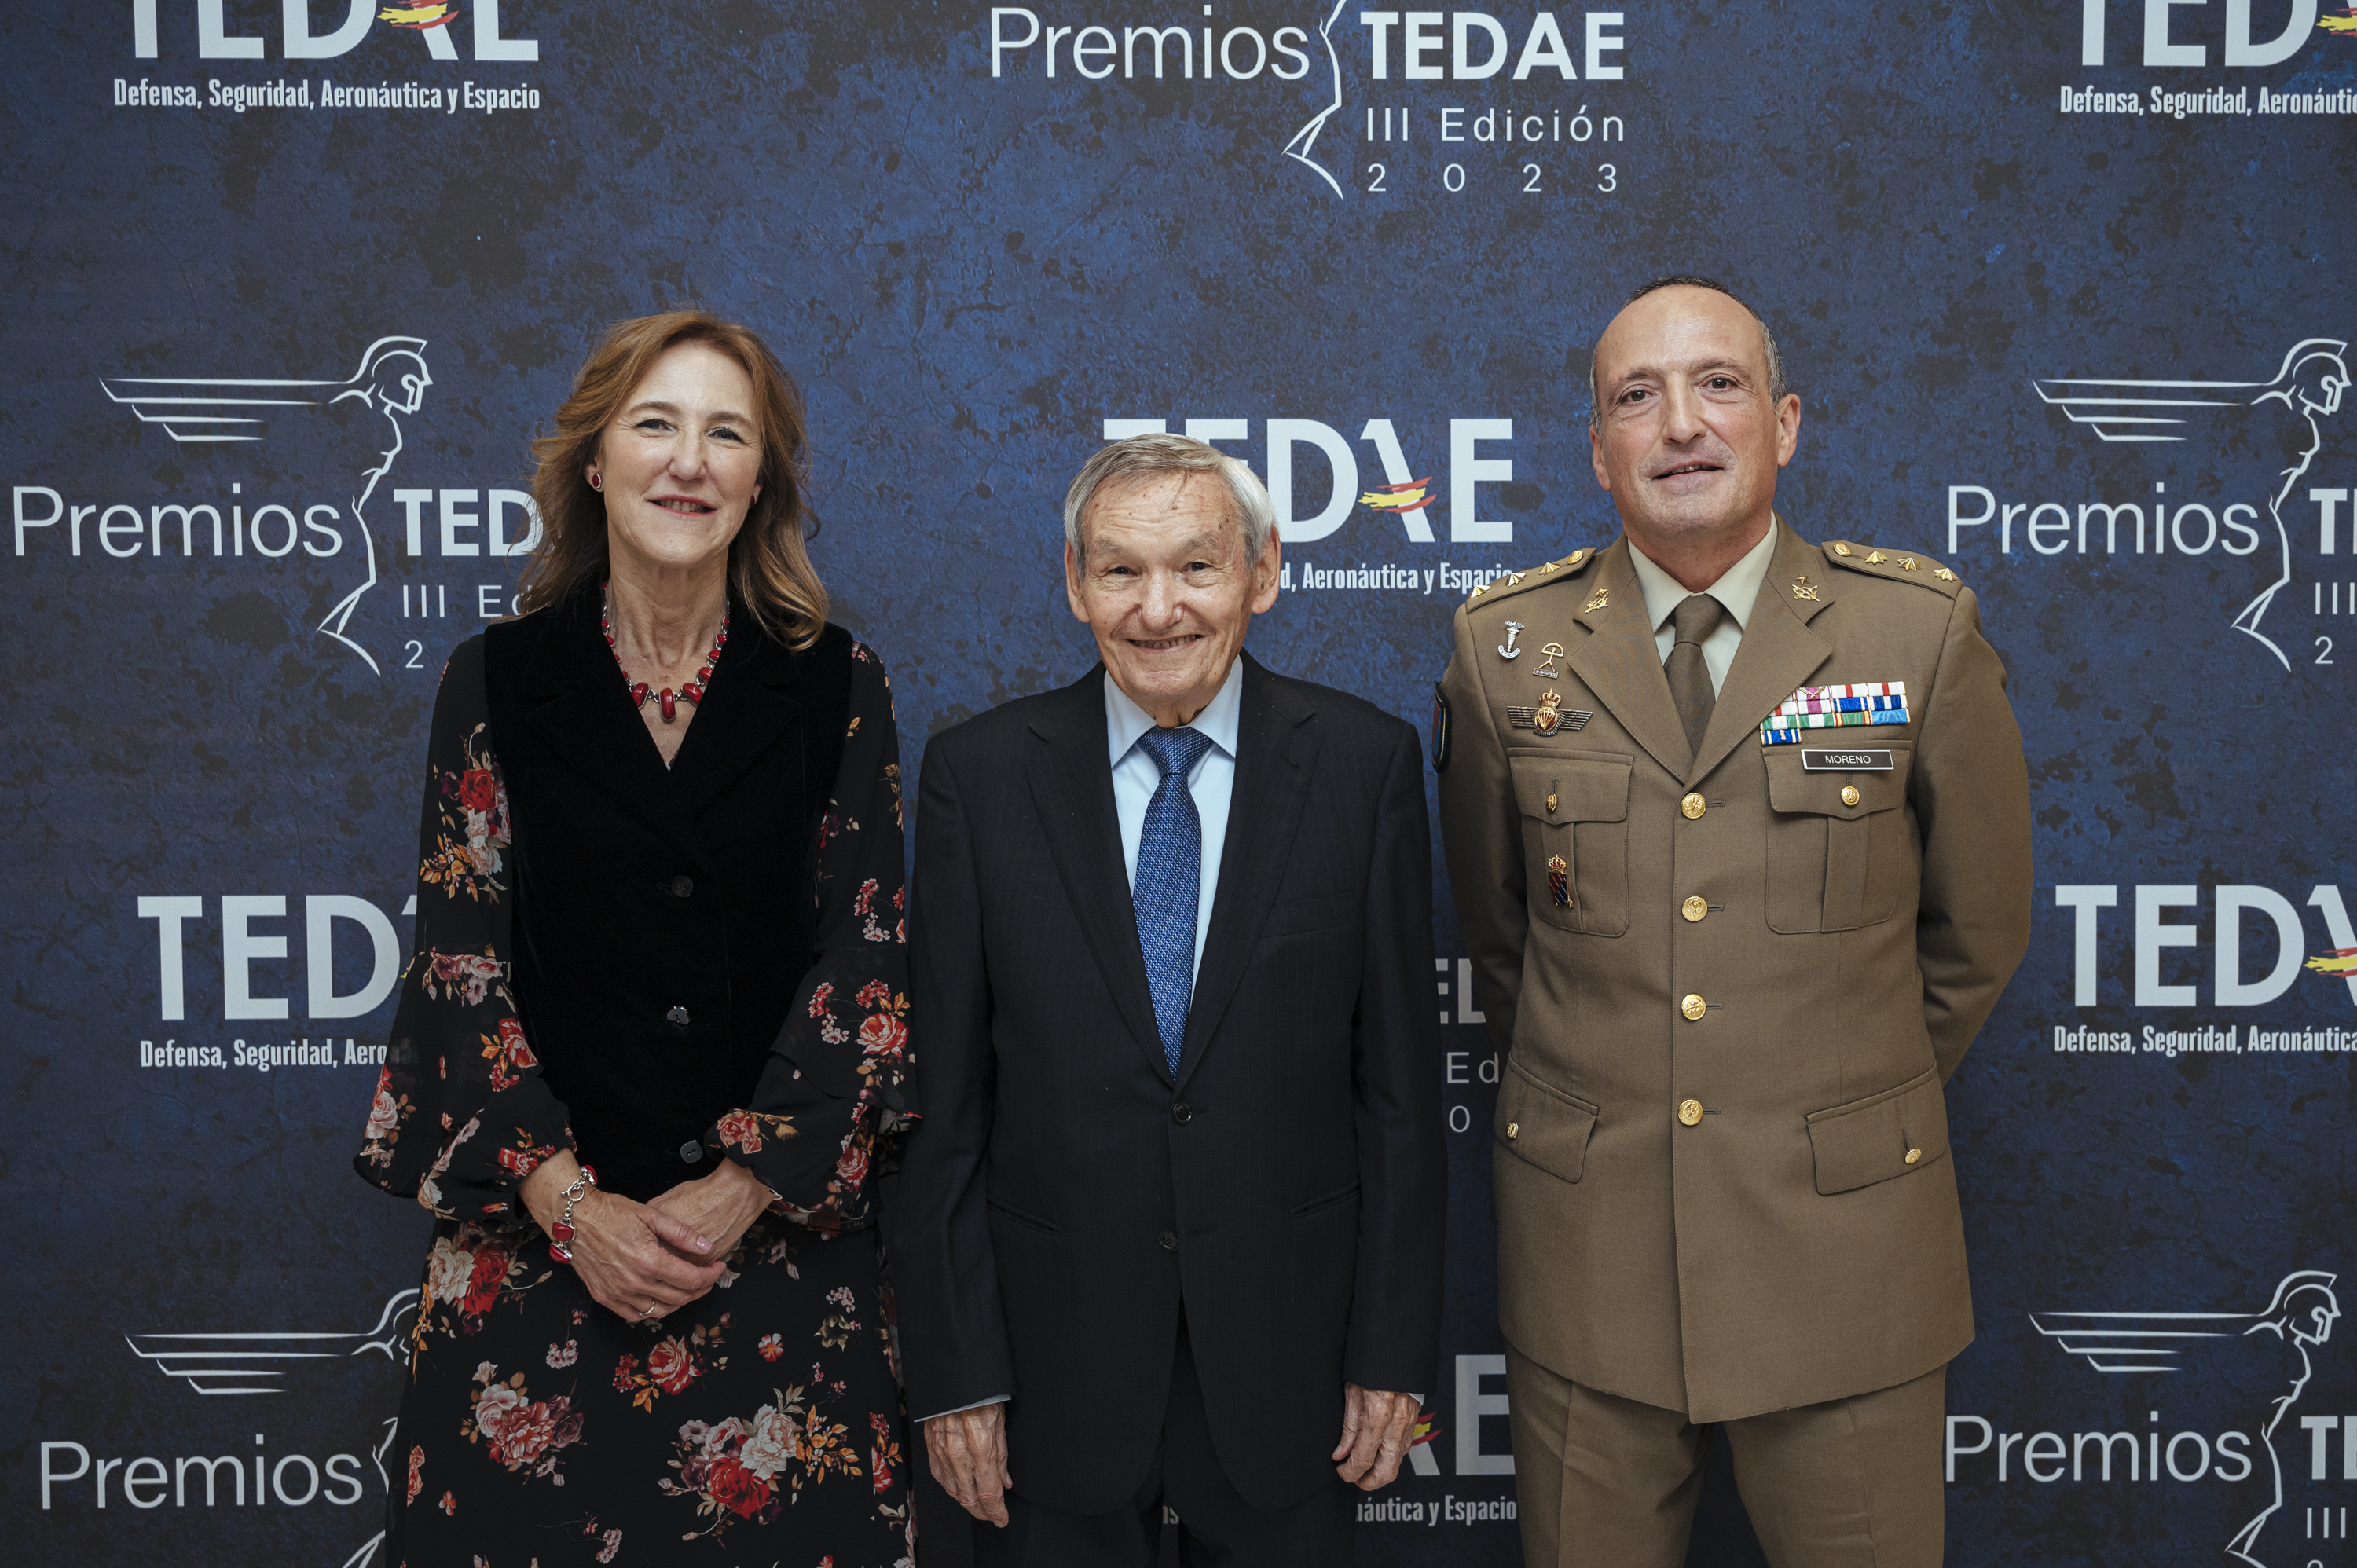 Silvia Lazcano, Amable Liñán y Javier Moreno Miguel, premios TEDAE 2023